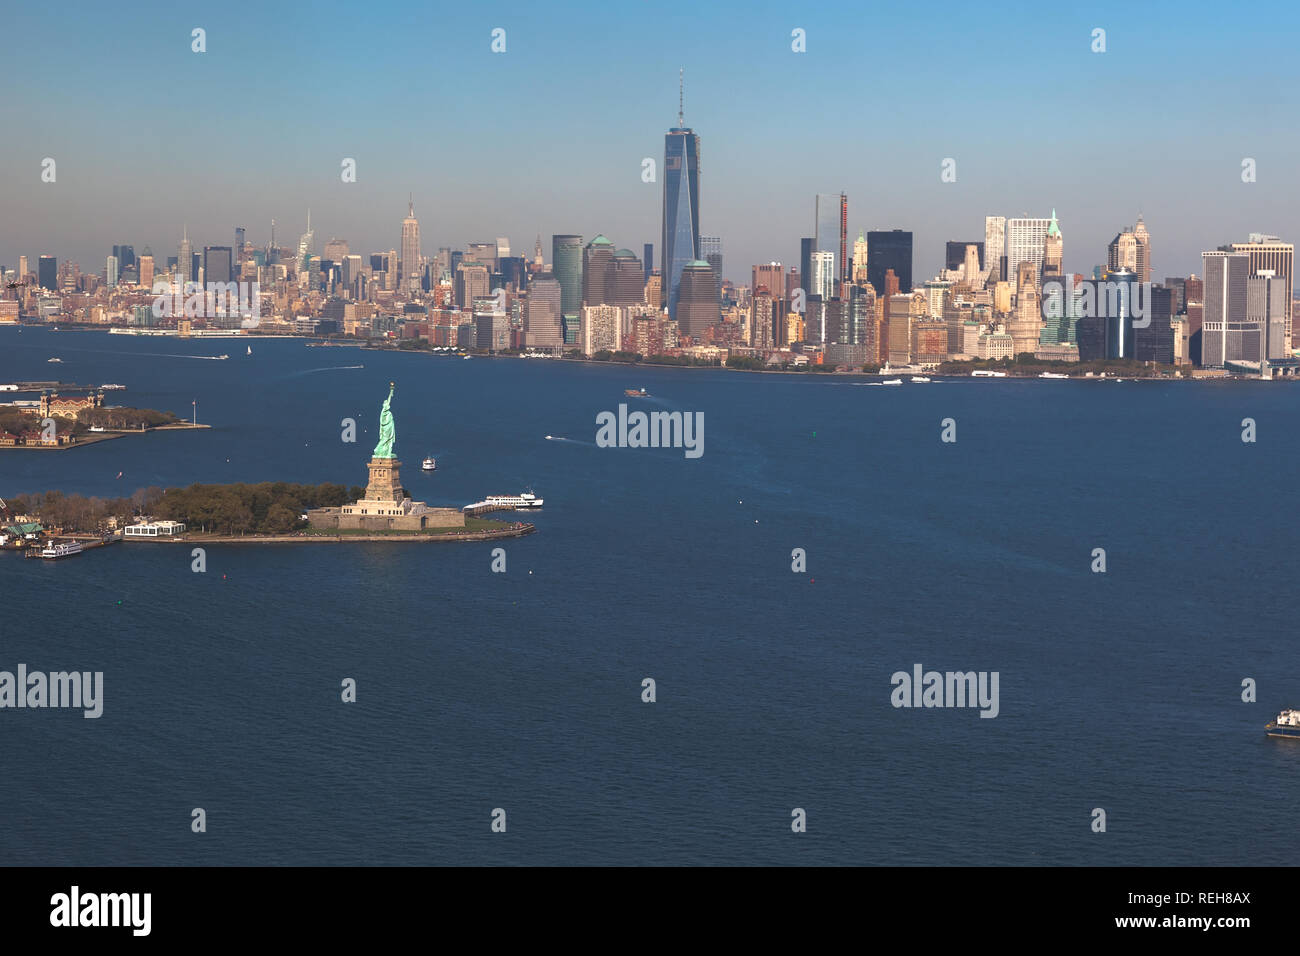 Helikopterblick auf Freiheitsstatue auf Hintergrund downtown Manhattan. Luftaufnahme. Liberty IslandManhattan, New York City, New York. Stockfoto